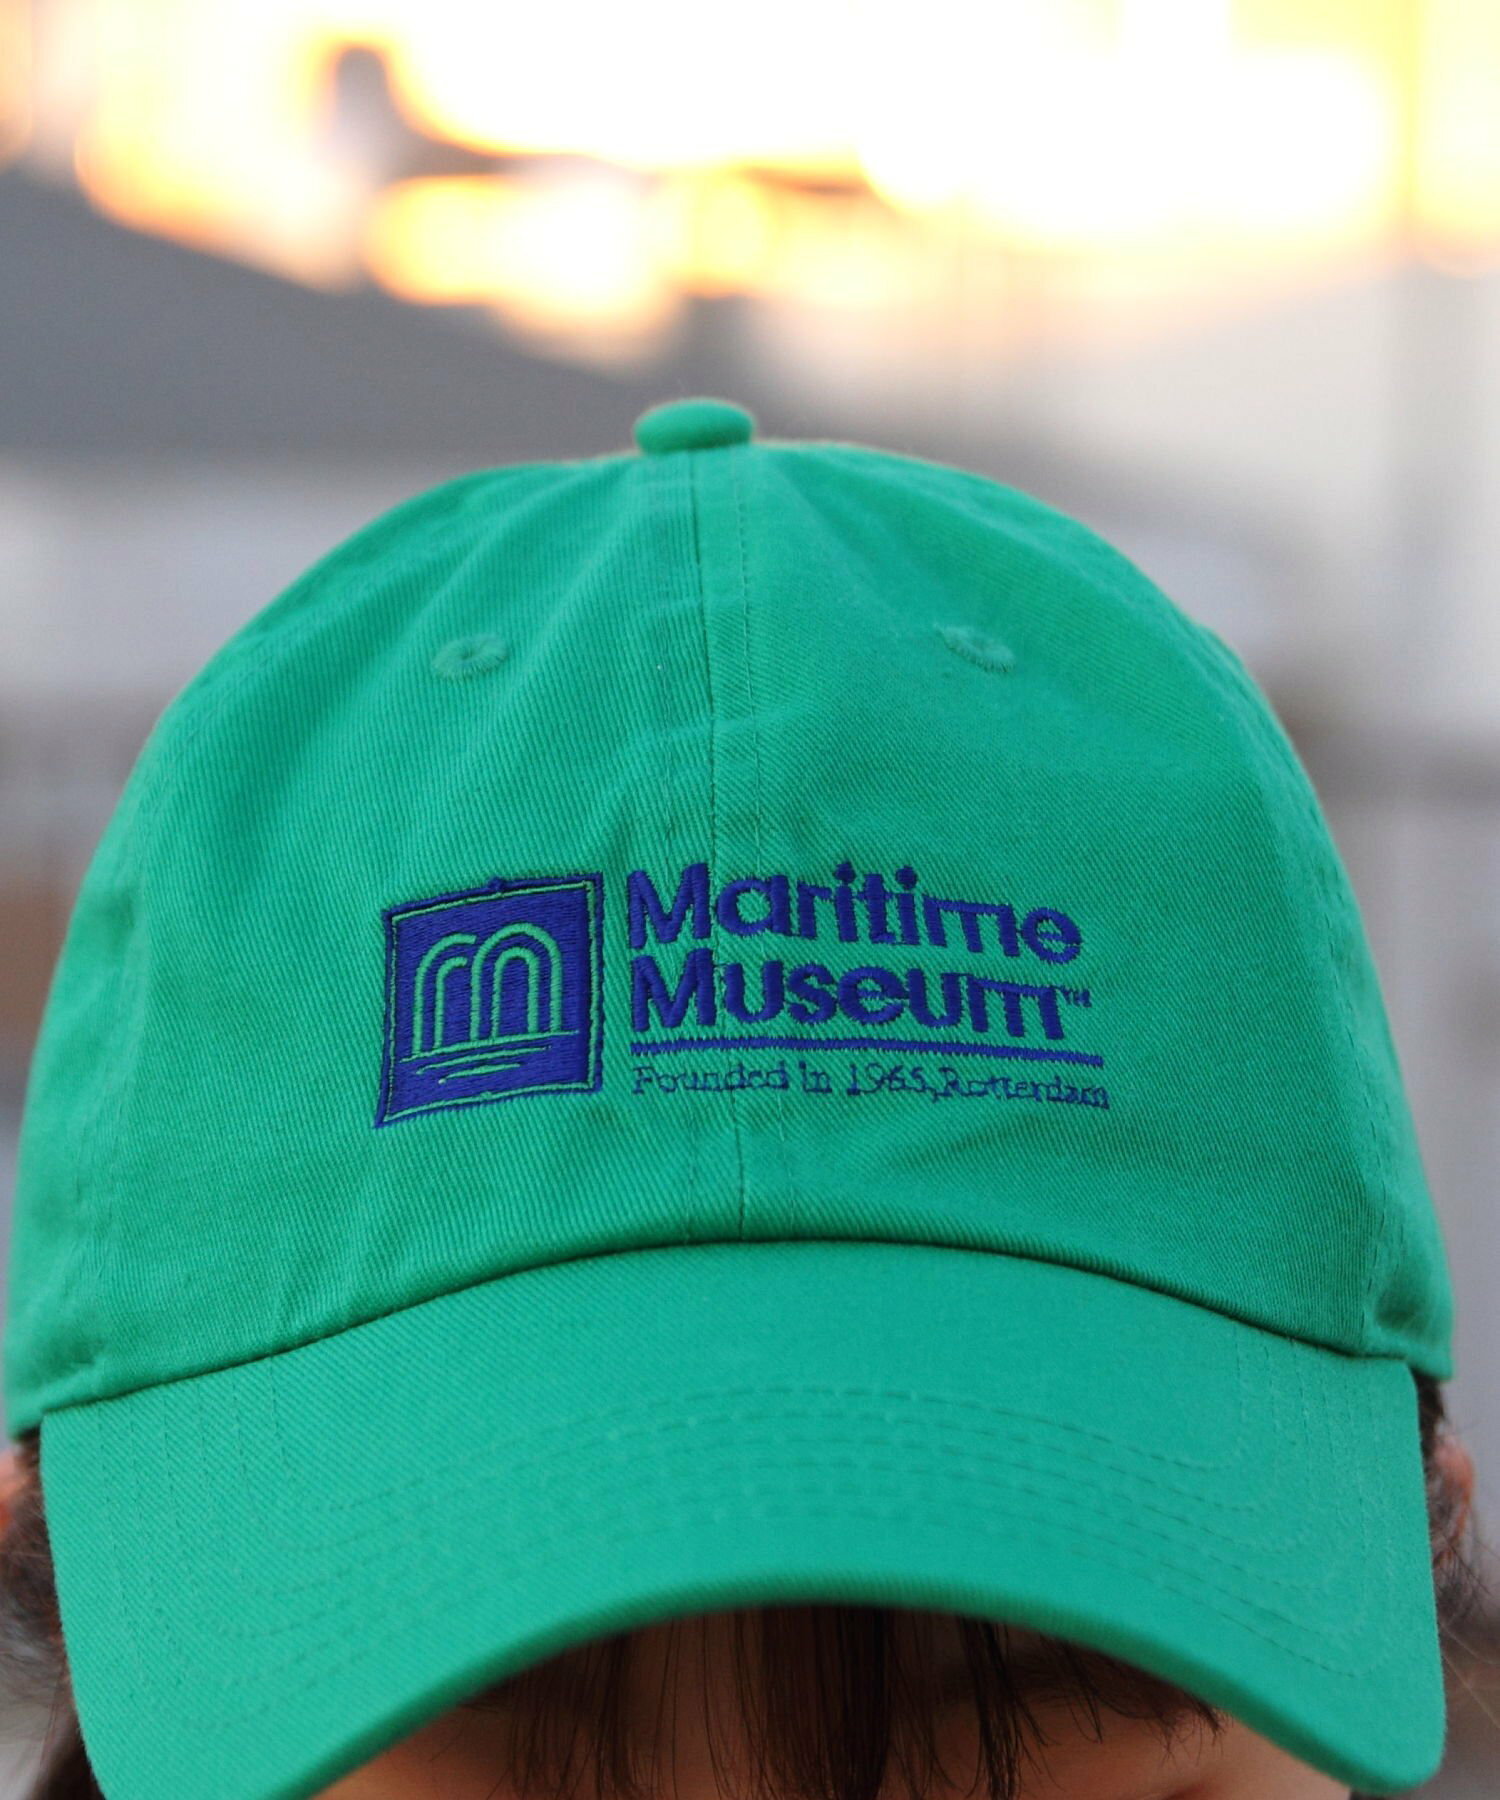 MARITIME MUSEUM CAP